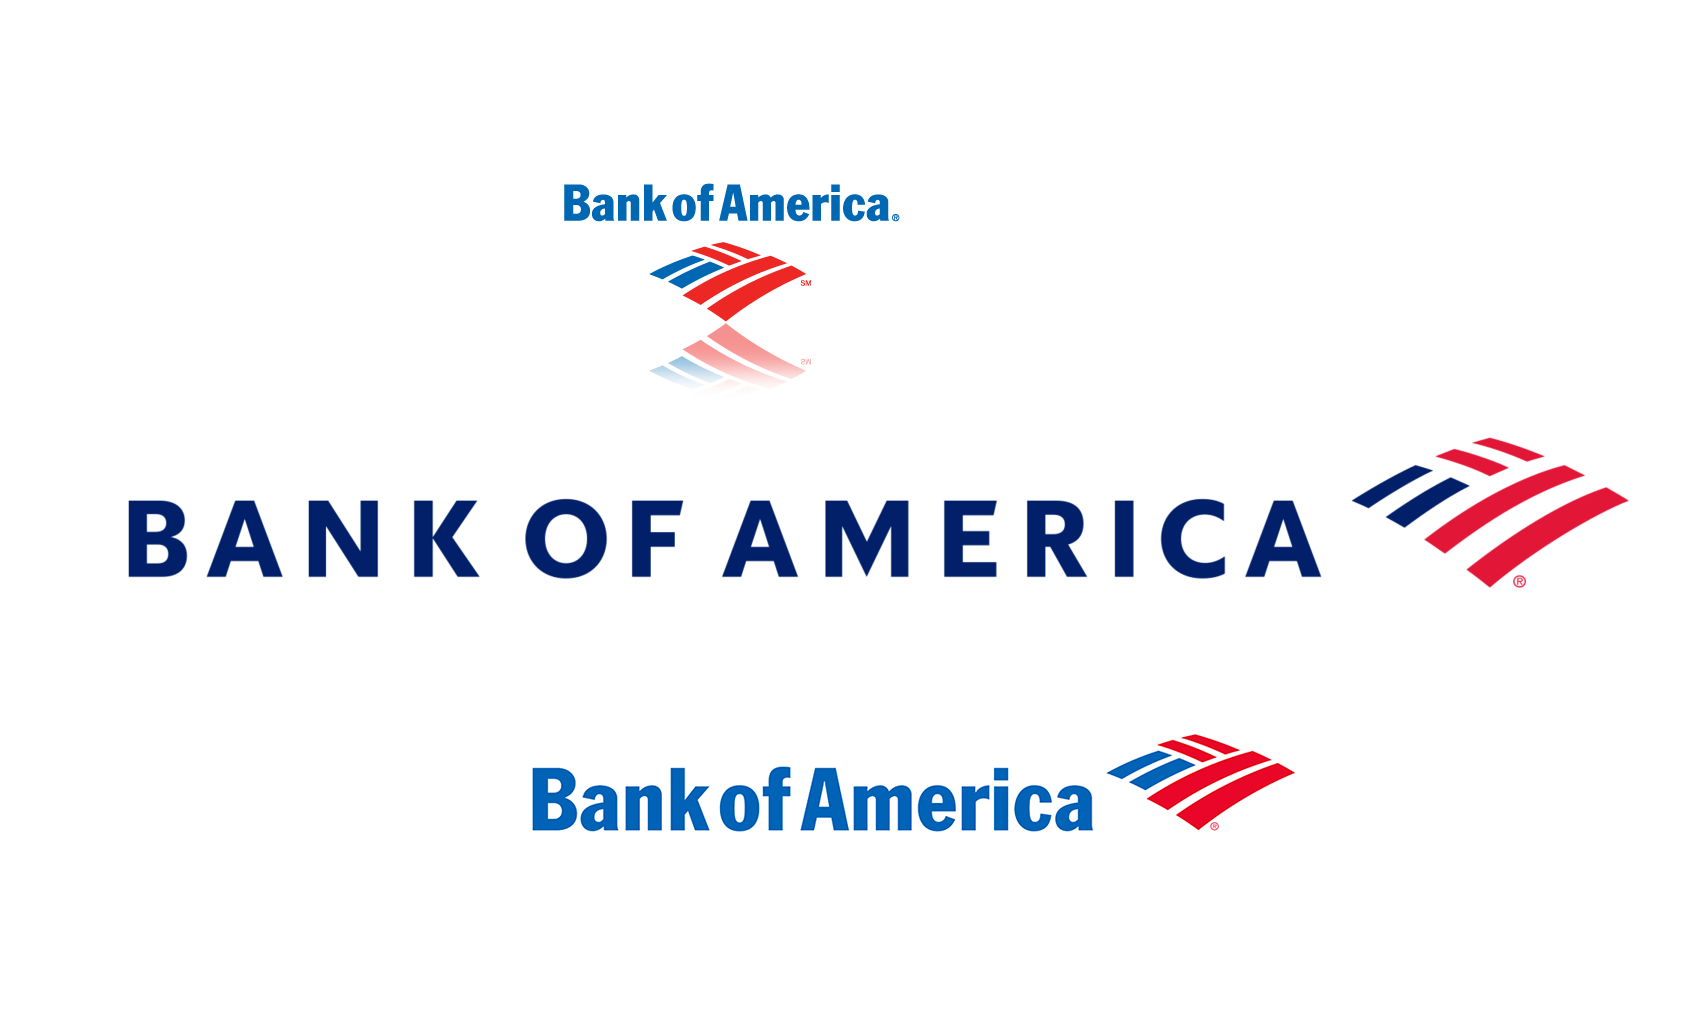 Bank of America Logos Horizontal PNG Transparent Image pngteam.com